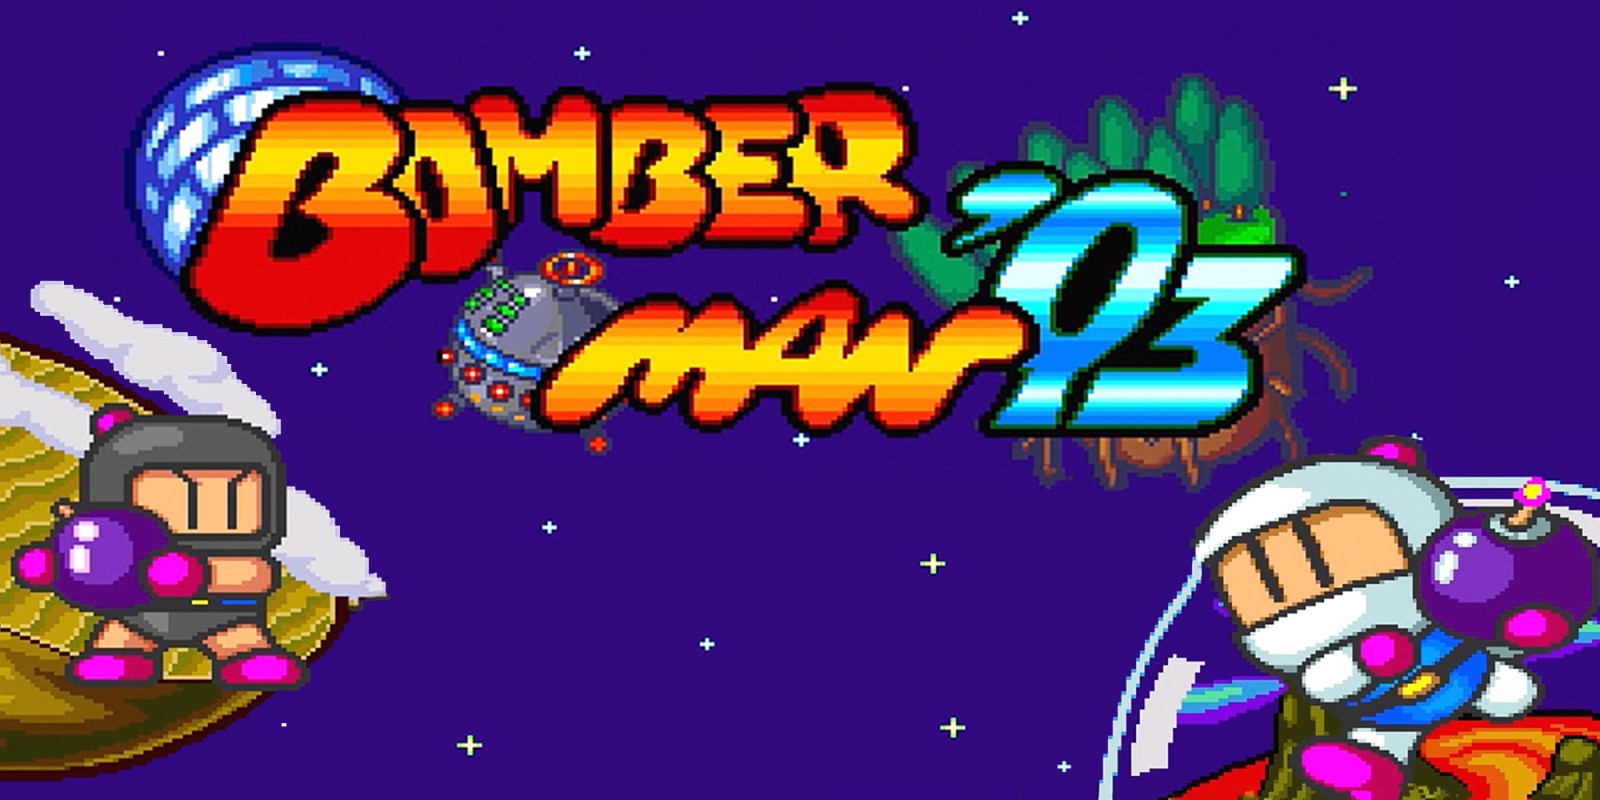 H2x1_WiiUVC_Bomberman93_image1600w.jpg